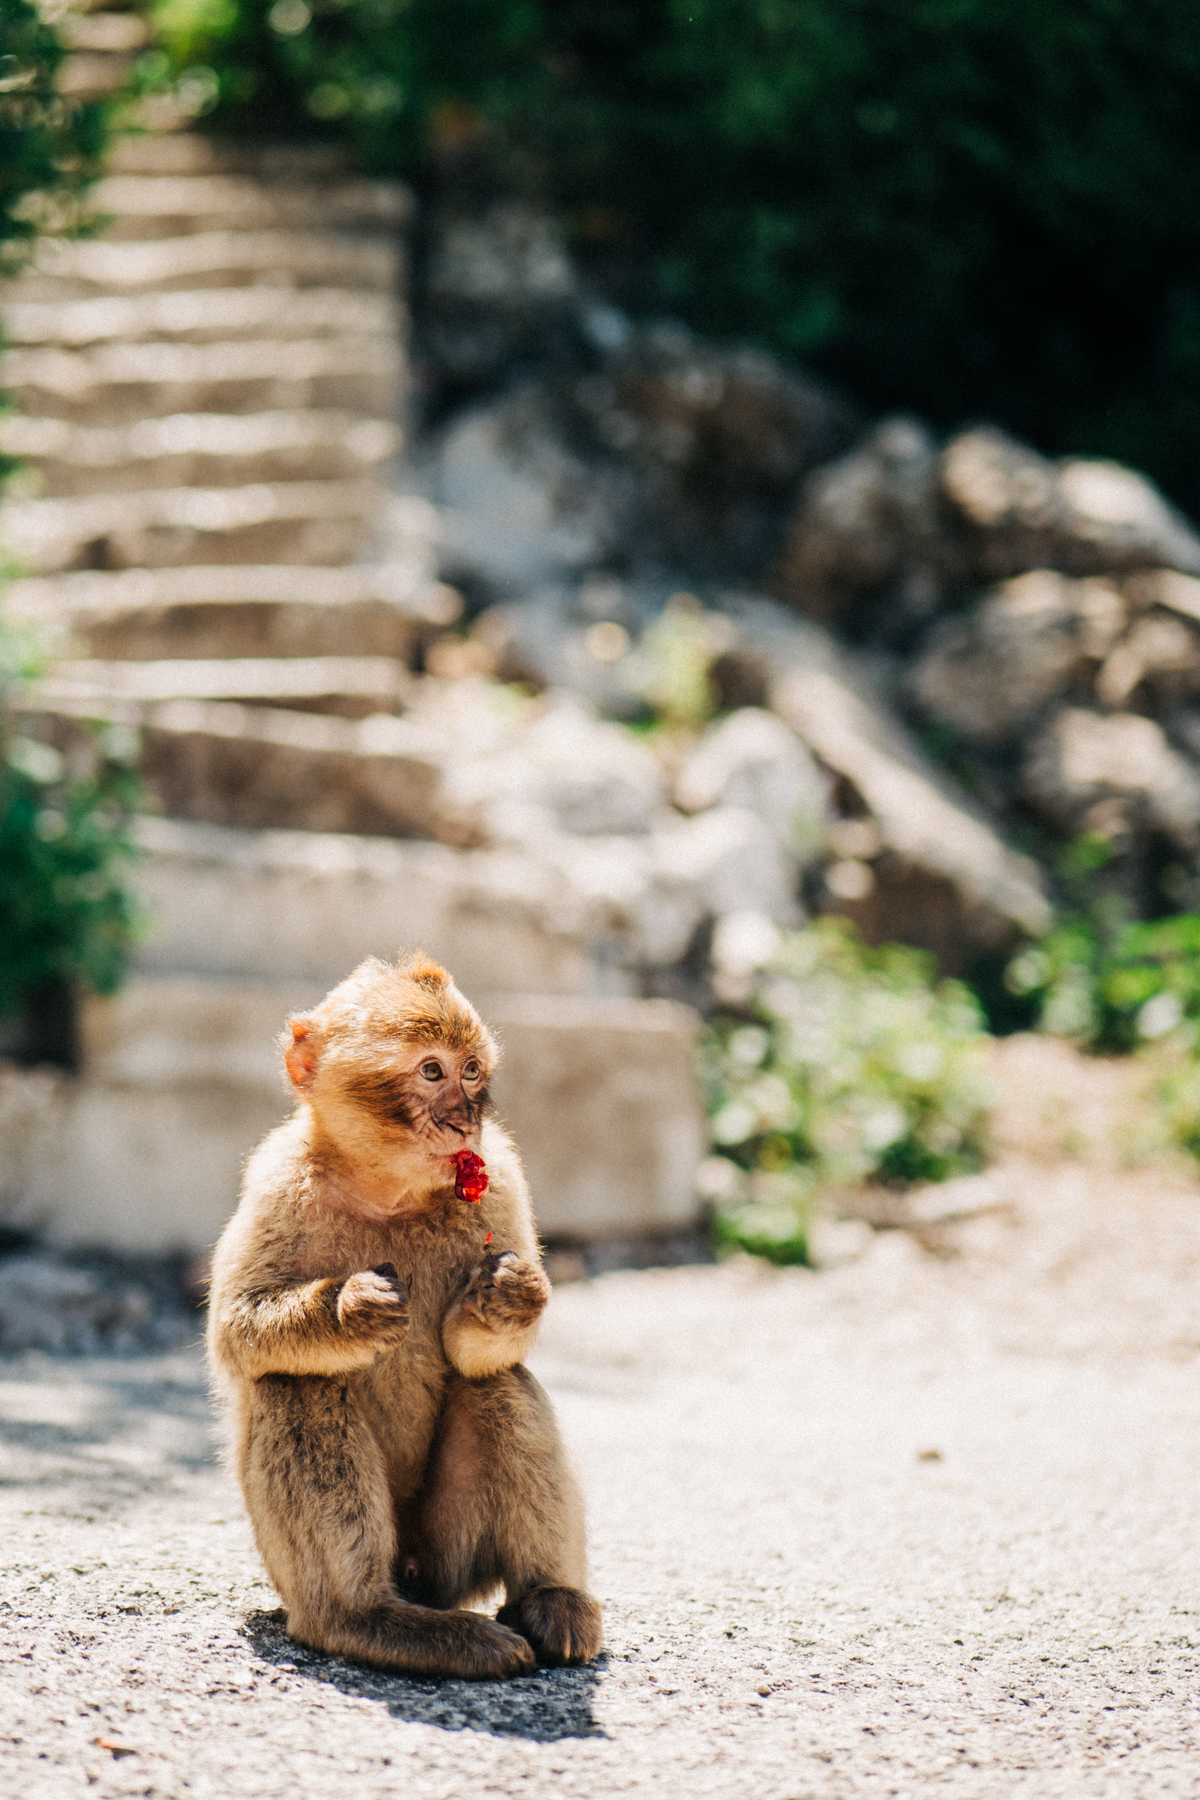 Affenfelsen Fels von Gibraltar Bilder 23 - In Gibraltar sind die Affen los: Zu Besuch auf dem Affenfelsen